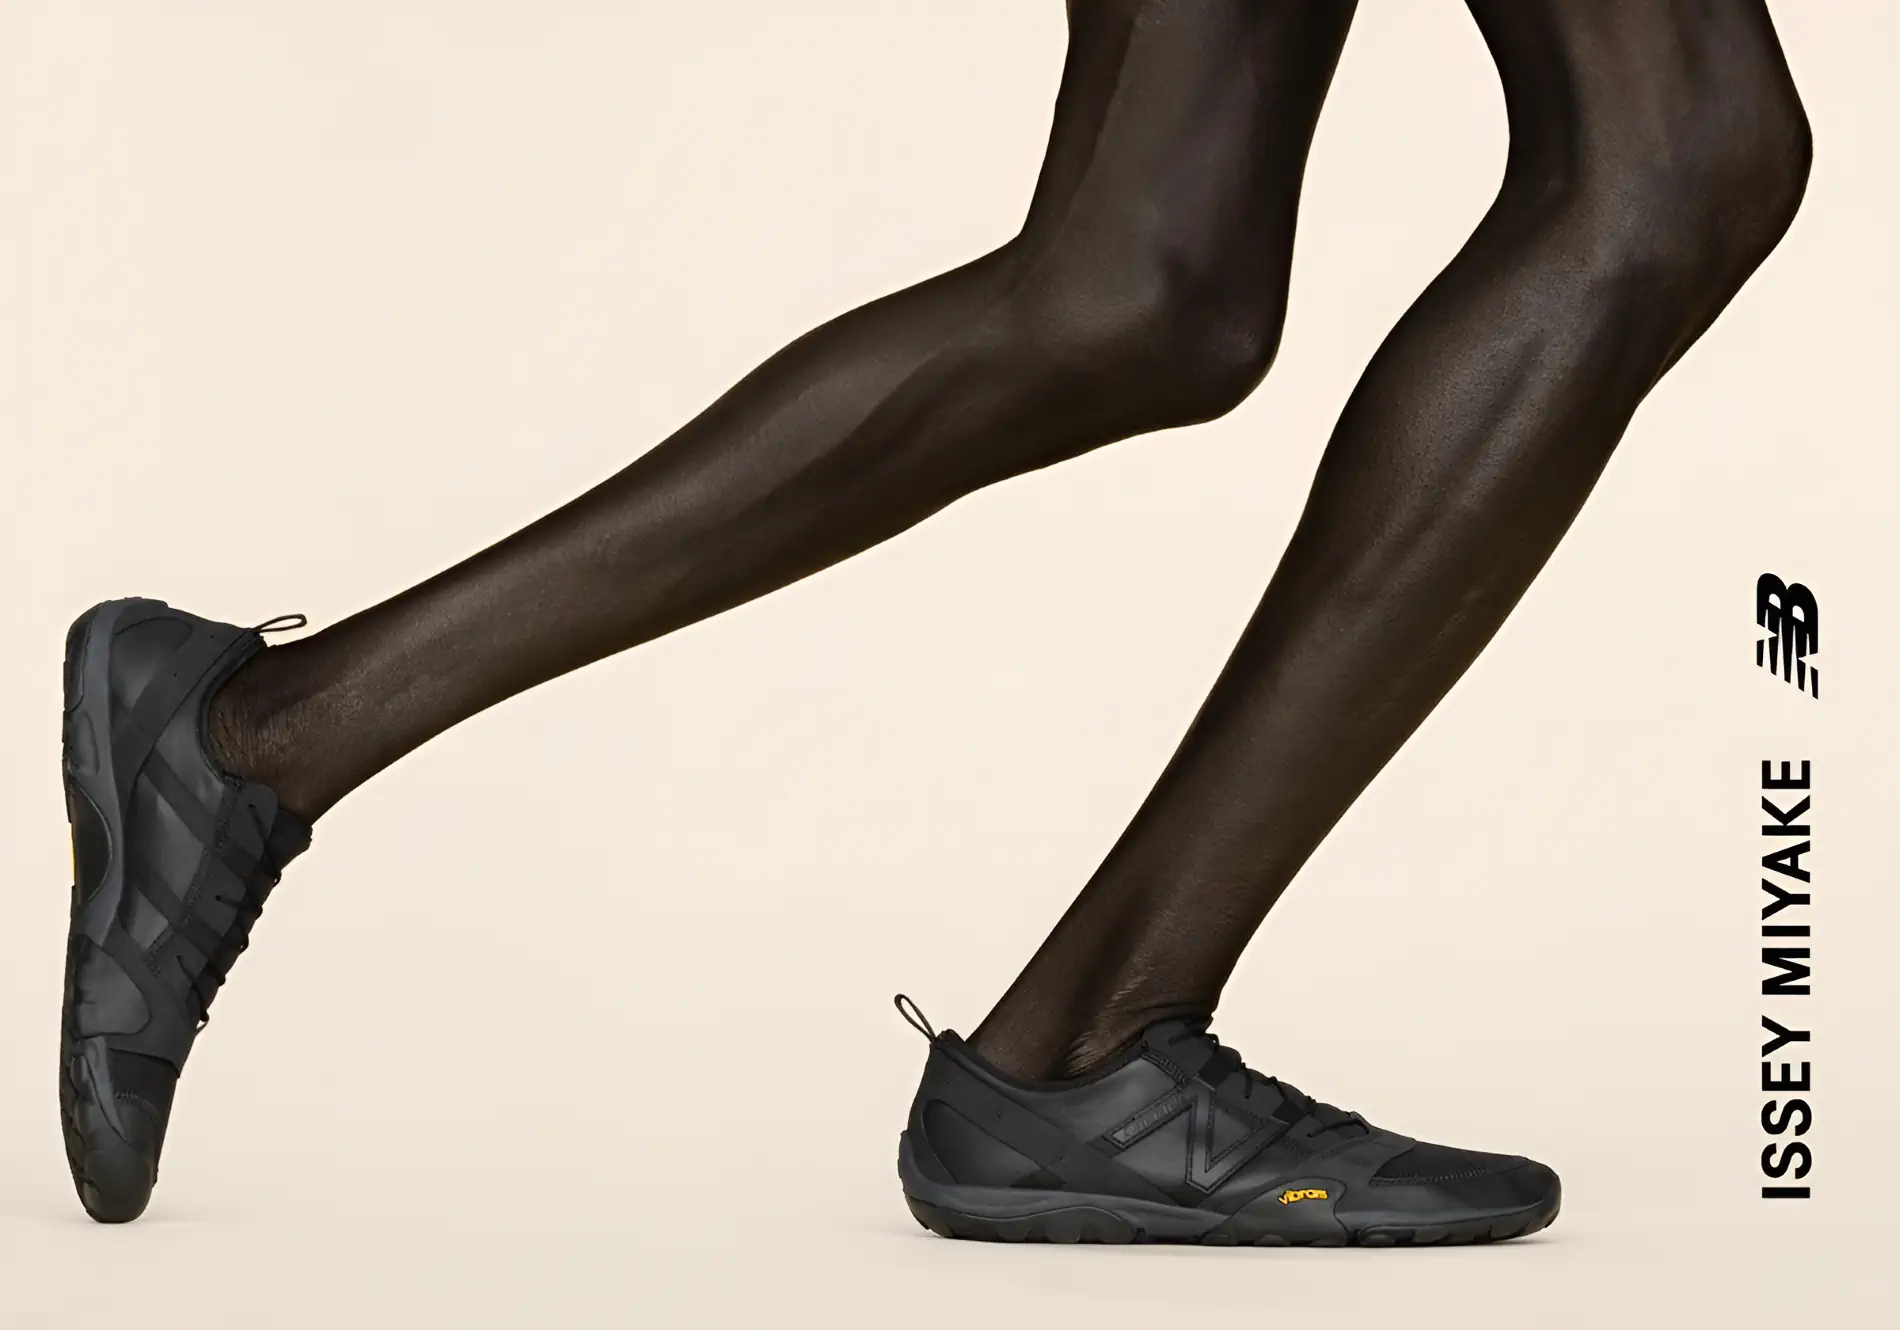 ISSEY MIYAKE et New Balance s'associent pour la MT10O, une chaussure inspirée de la course pieds nus